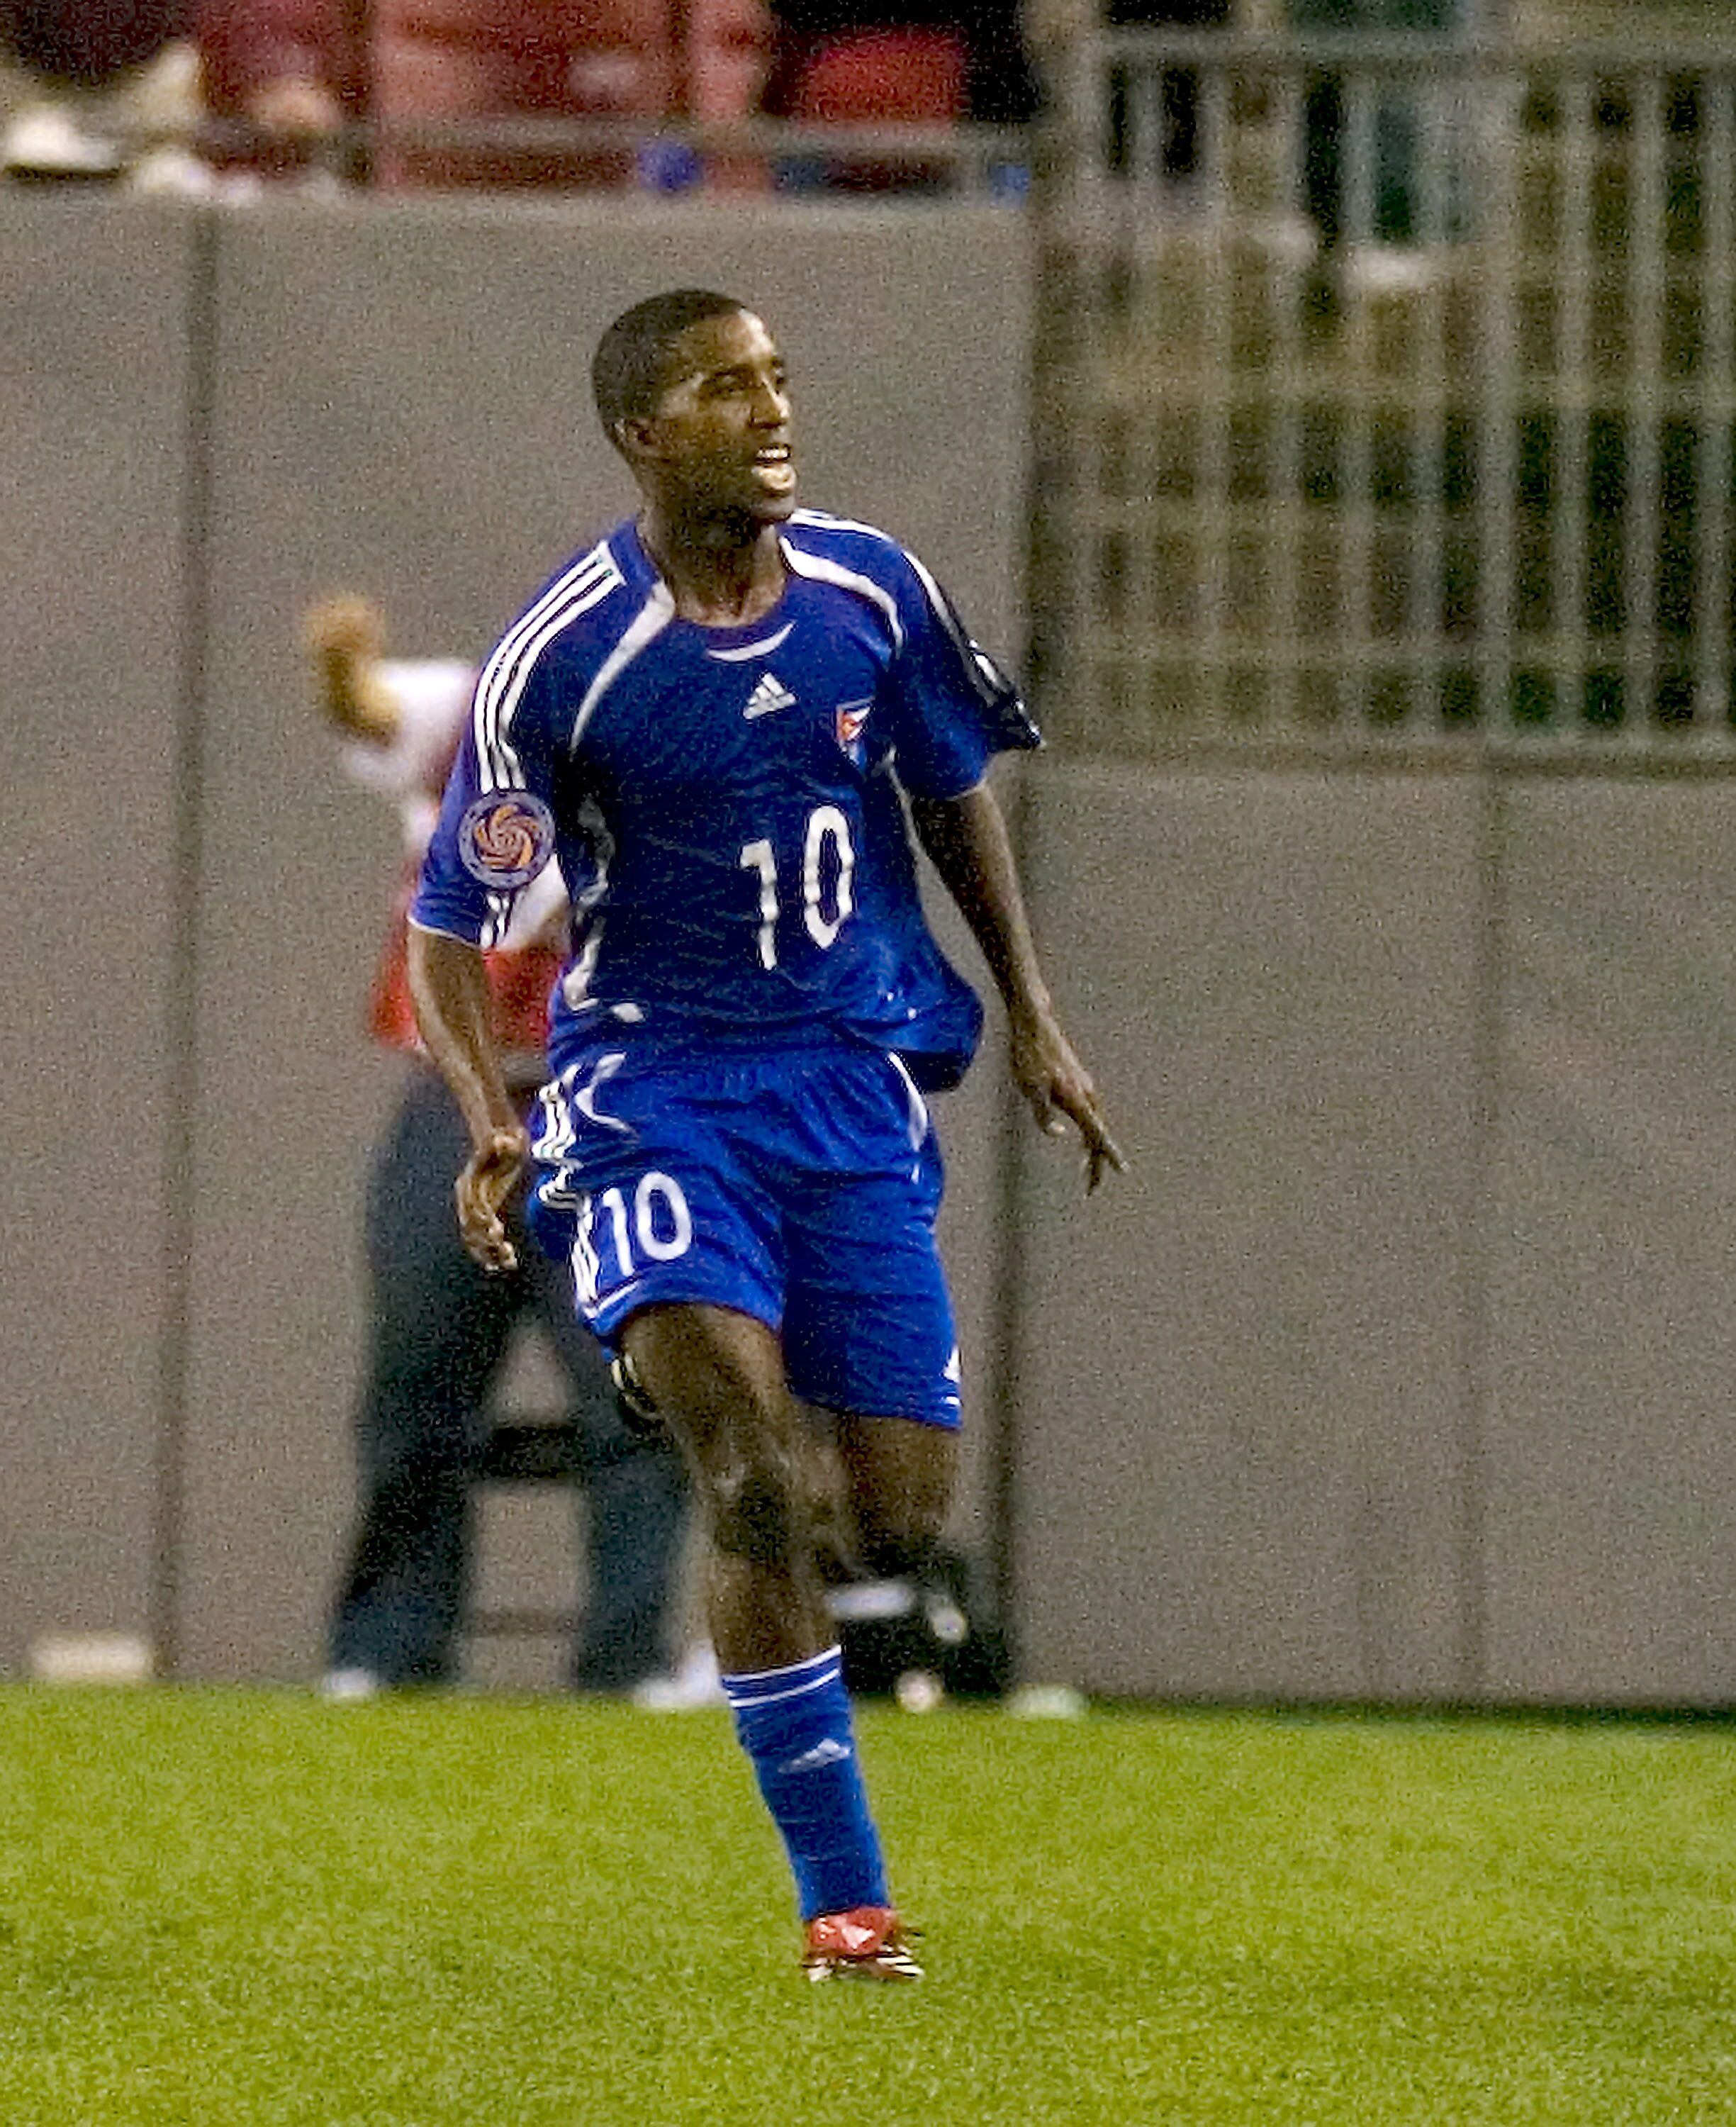 El jugador cubano Yordany Alvarez antes de desertar en el partido frente a los Estados Unidos en las eliminatorias a Pekín 2008.